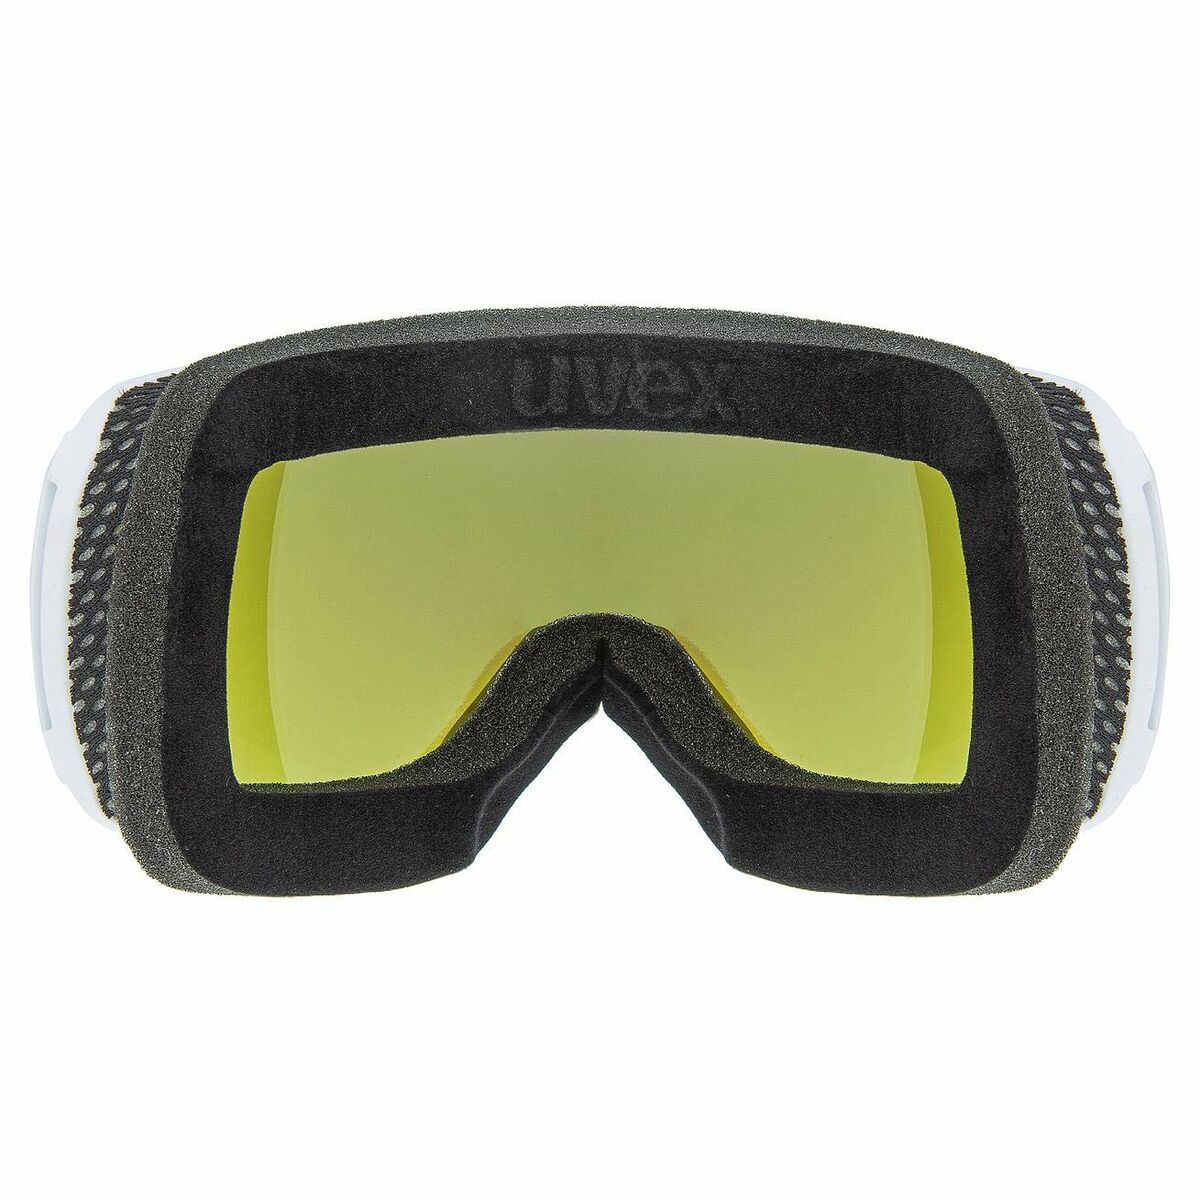 Γυαλιά για Σκι Uvex Downhill 2100 CV Μπλε Μαύρο Πράσινο Πλαστική ύλη